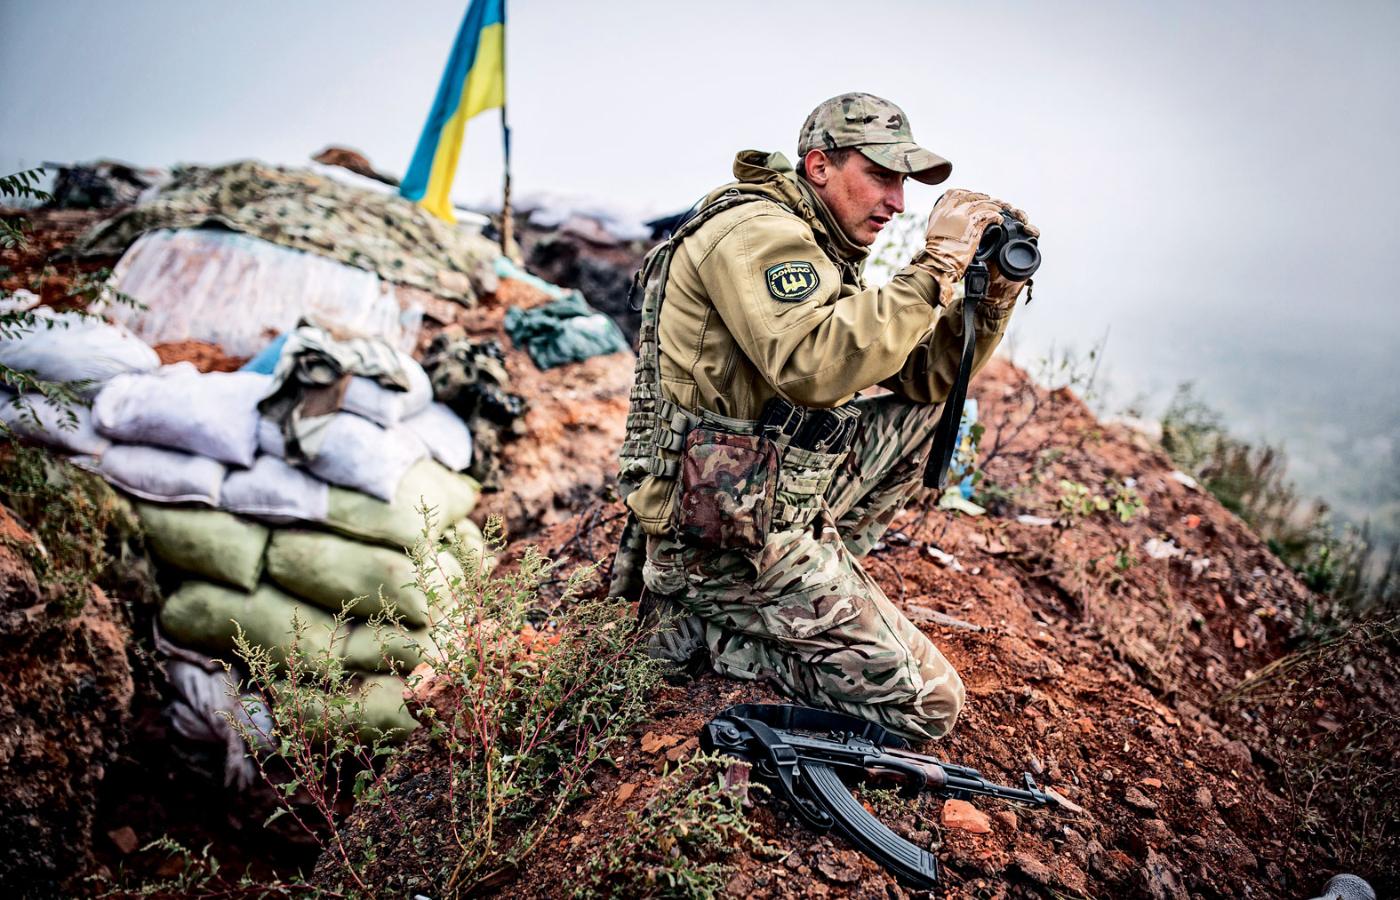 Ukraiński spotter, czyli żołnierz współpracujący ze snajperem. Marjinka, ostatnie miasto kontrolowane przez Ukrainę na granicy z Doniecką Republika Ludową.